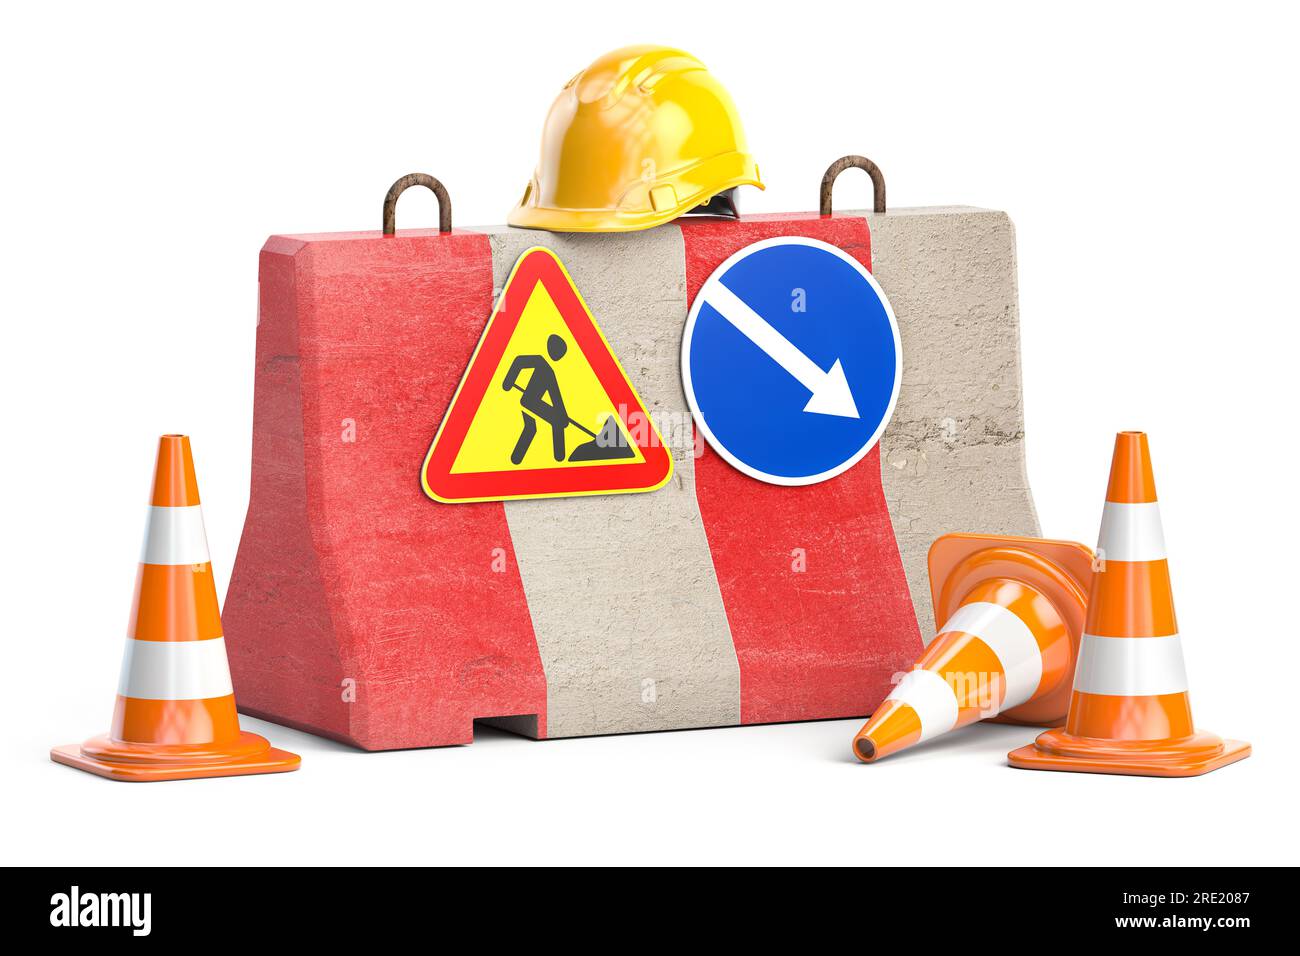 In costruzione. Barriera stradale con segnali stradali, coni e elmetto. illustrazione 3d. Foto Stock